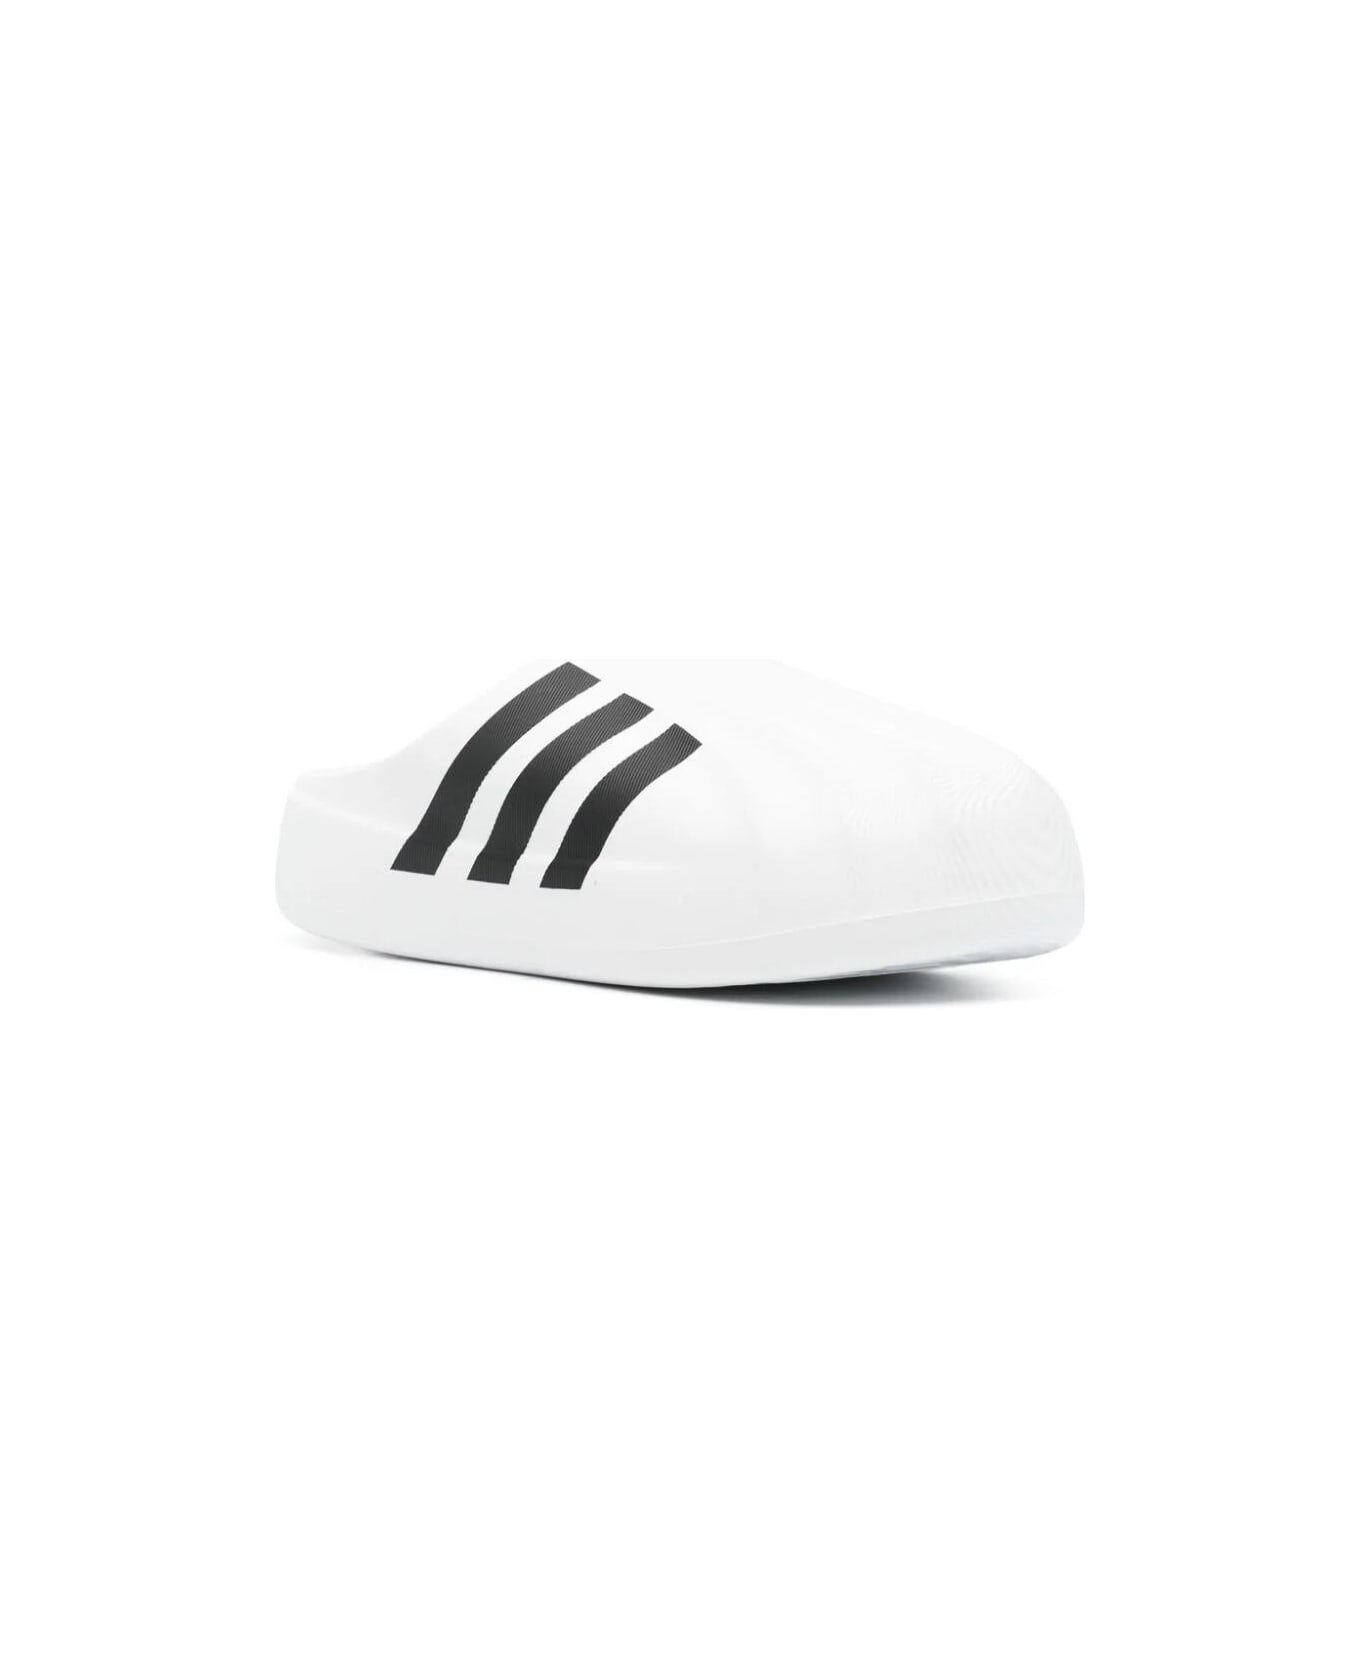 Adidas Adifom Superstar Mu Sneakers - Ftwwht Cblack Ftwwht スニーカー